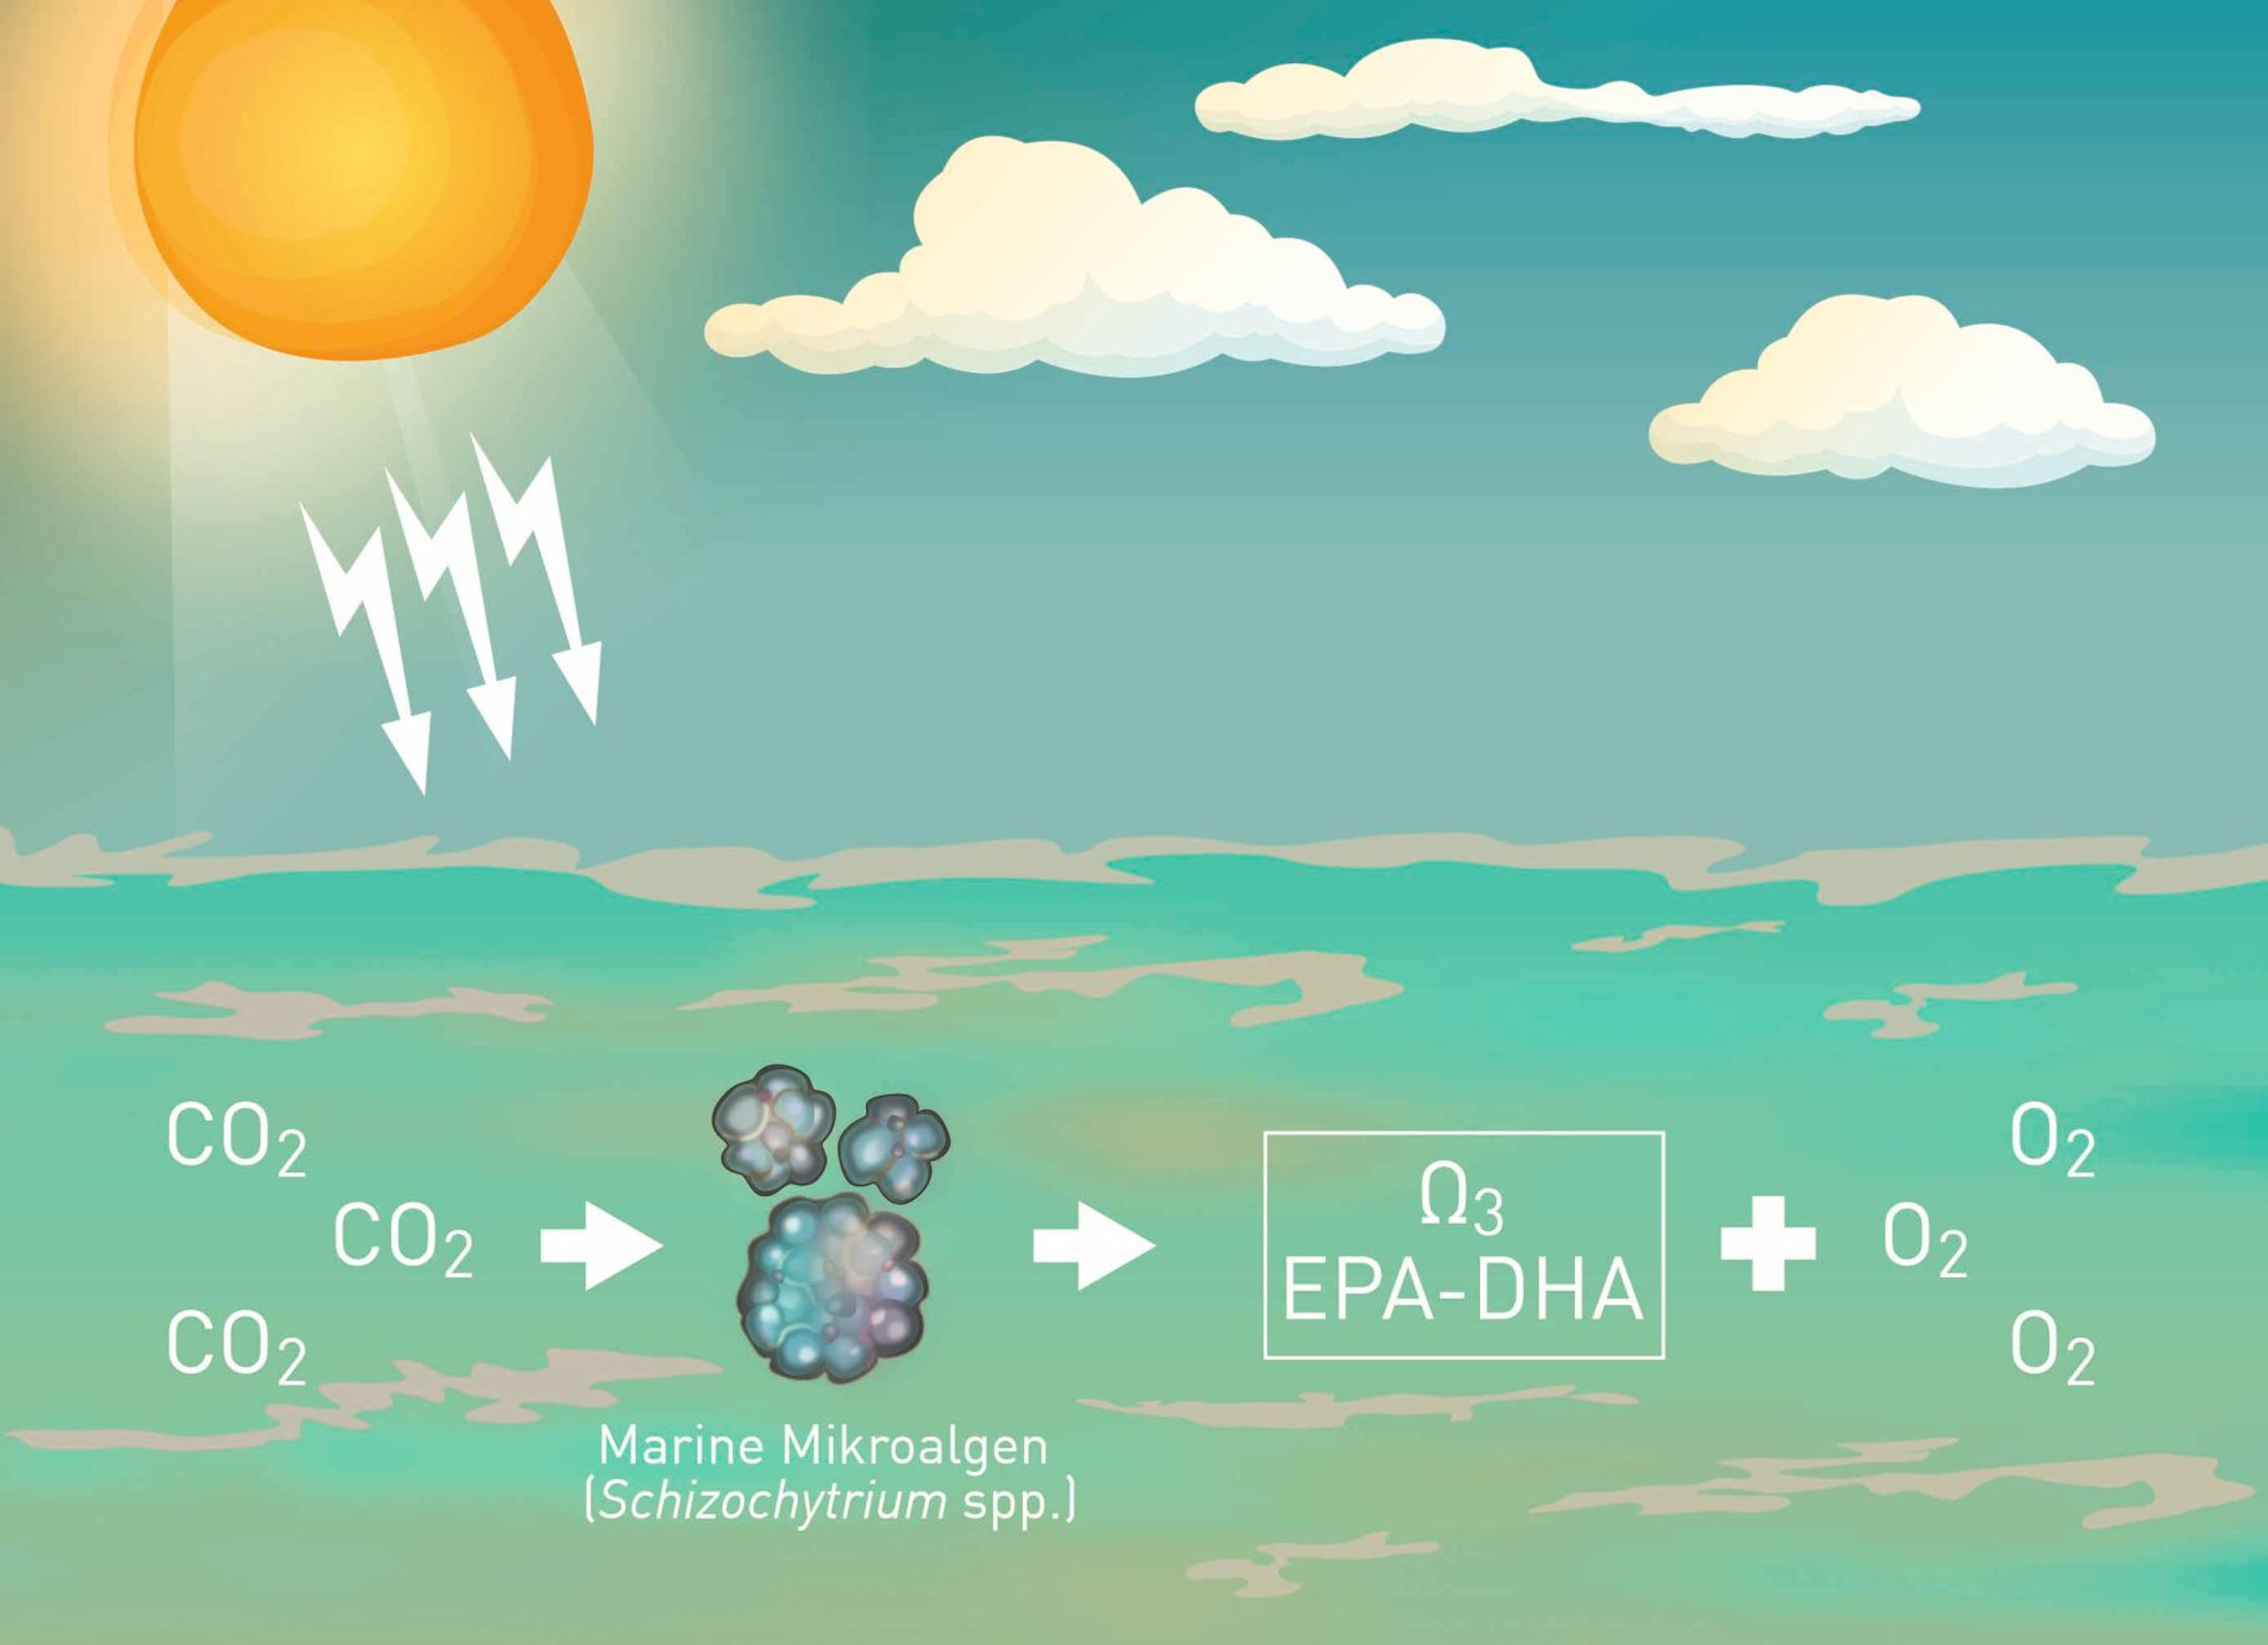 Marine Algen wie Schizochytrium spp. produzieren die Omega-3-Fettsäuren EPA und DHA auf natürliche Weise mit Hilfe der Energie des Sonnenlichts